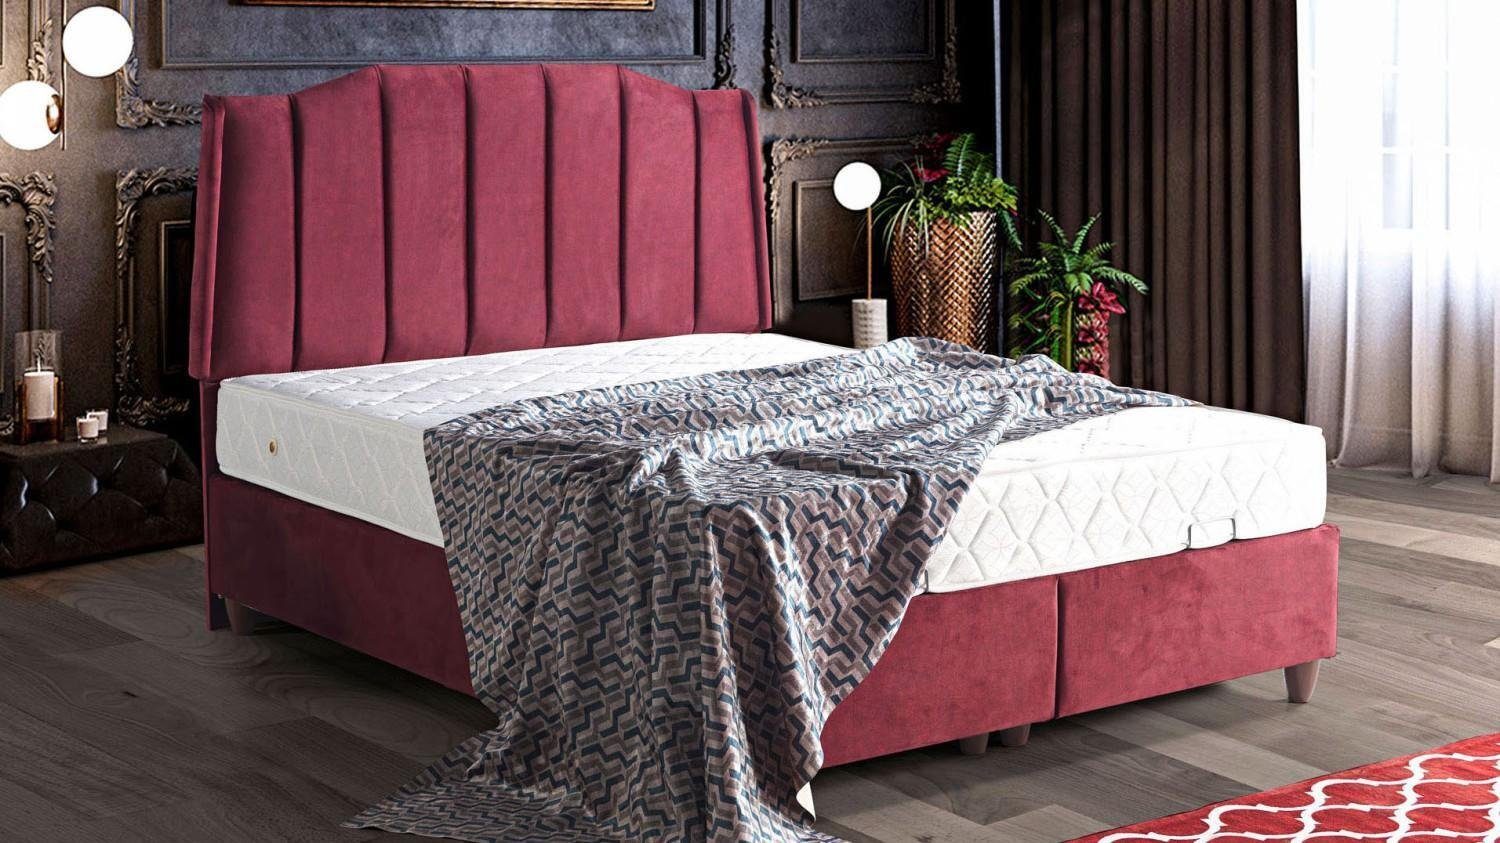 JVmoebel Bett Bett Design Betten Luxus Betten Polster Schlafzimmer Möbel Neu Modern (Bett), Made In Europe